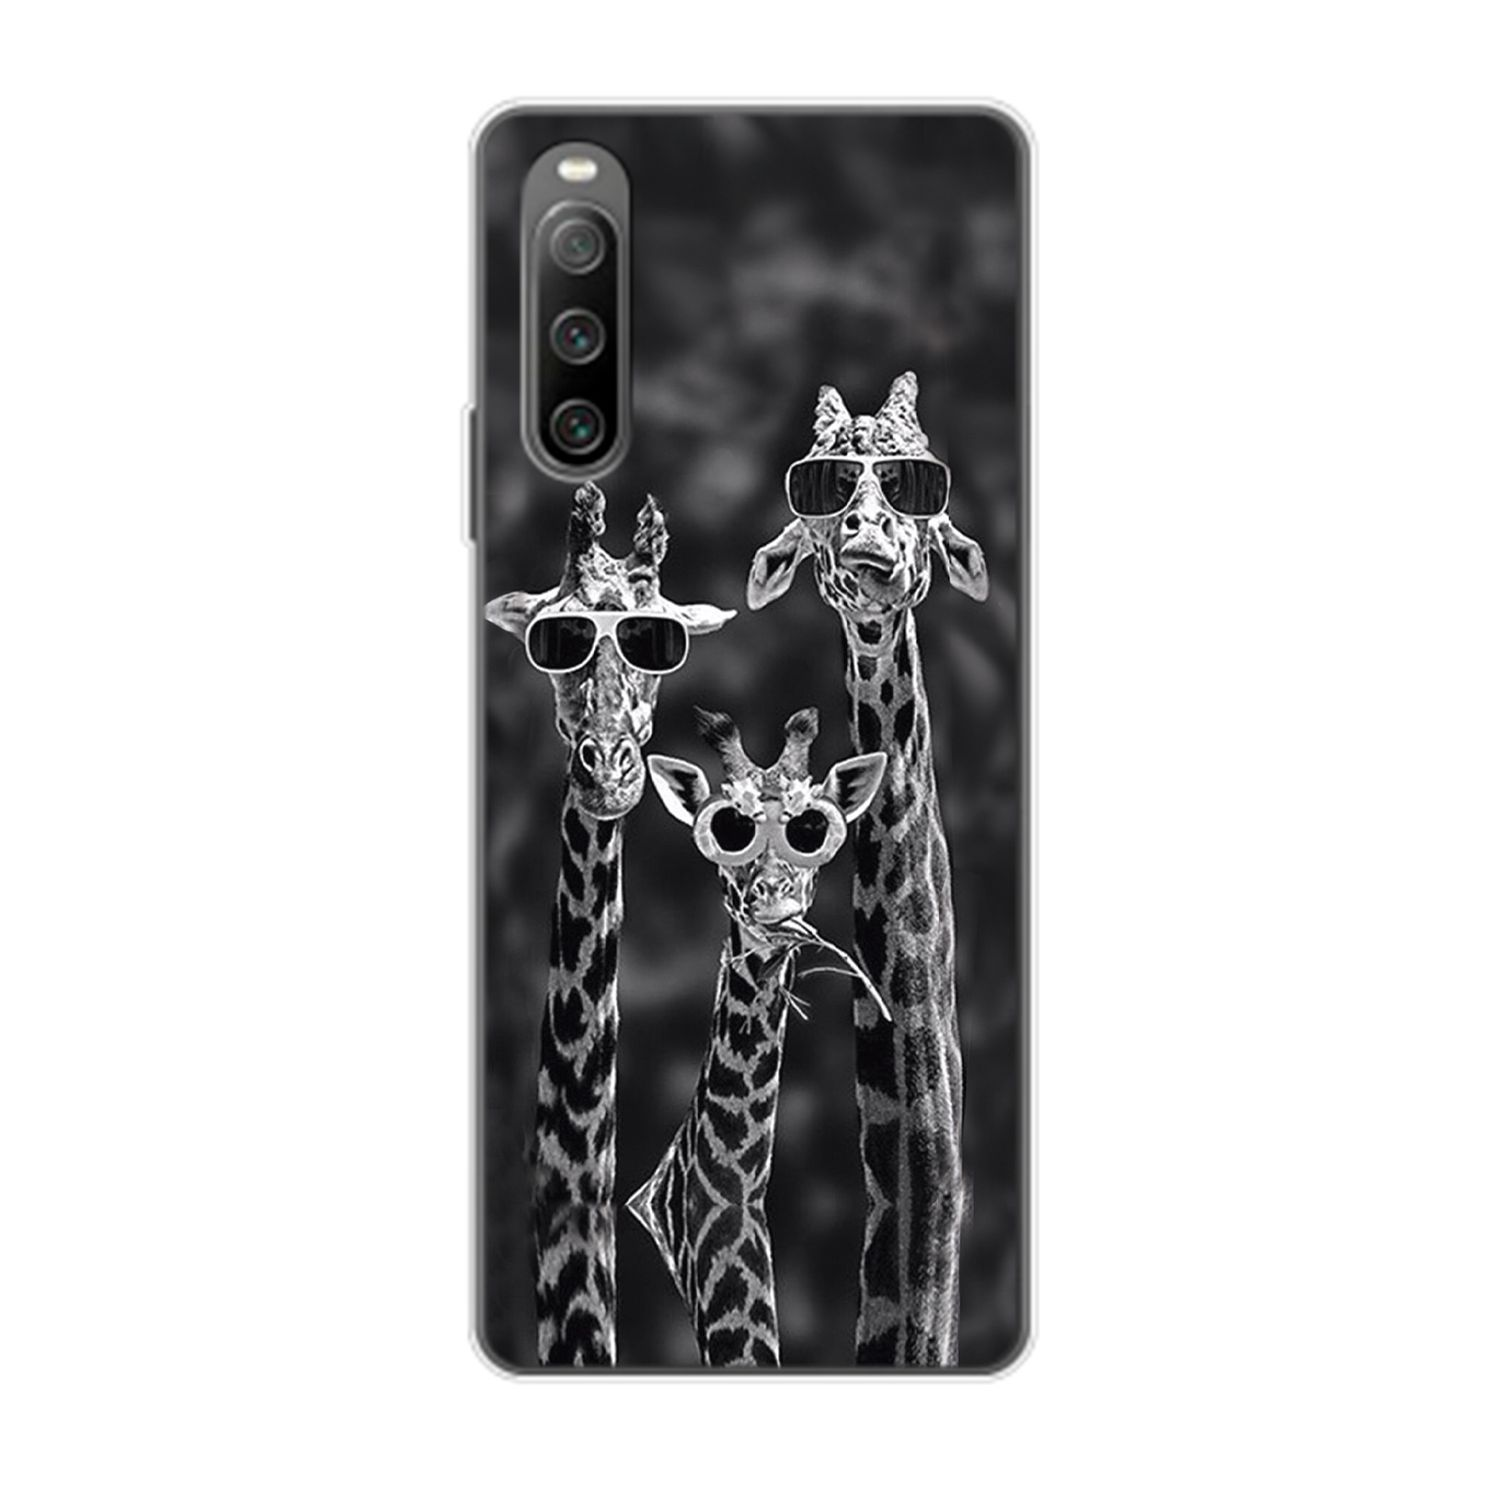 KÖNIG DESIGN Case, Giraffen 3 Xperia Backcover, IV, 10 Sony